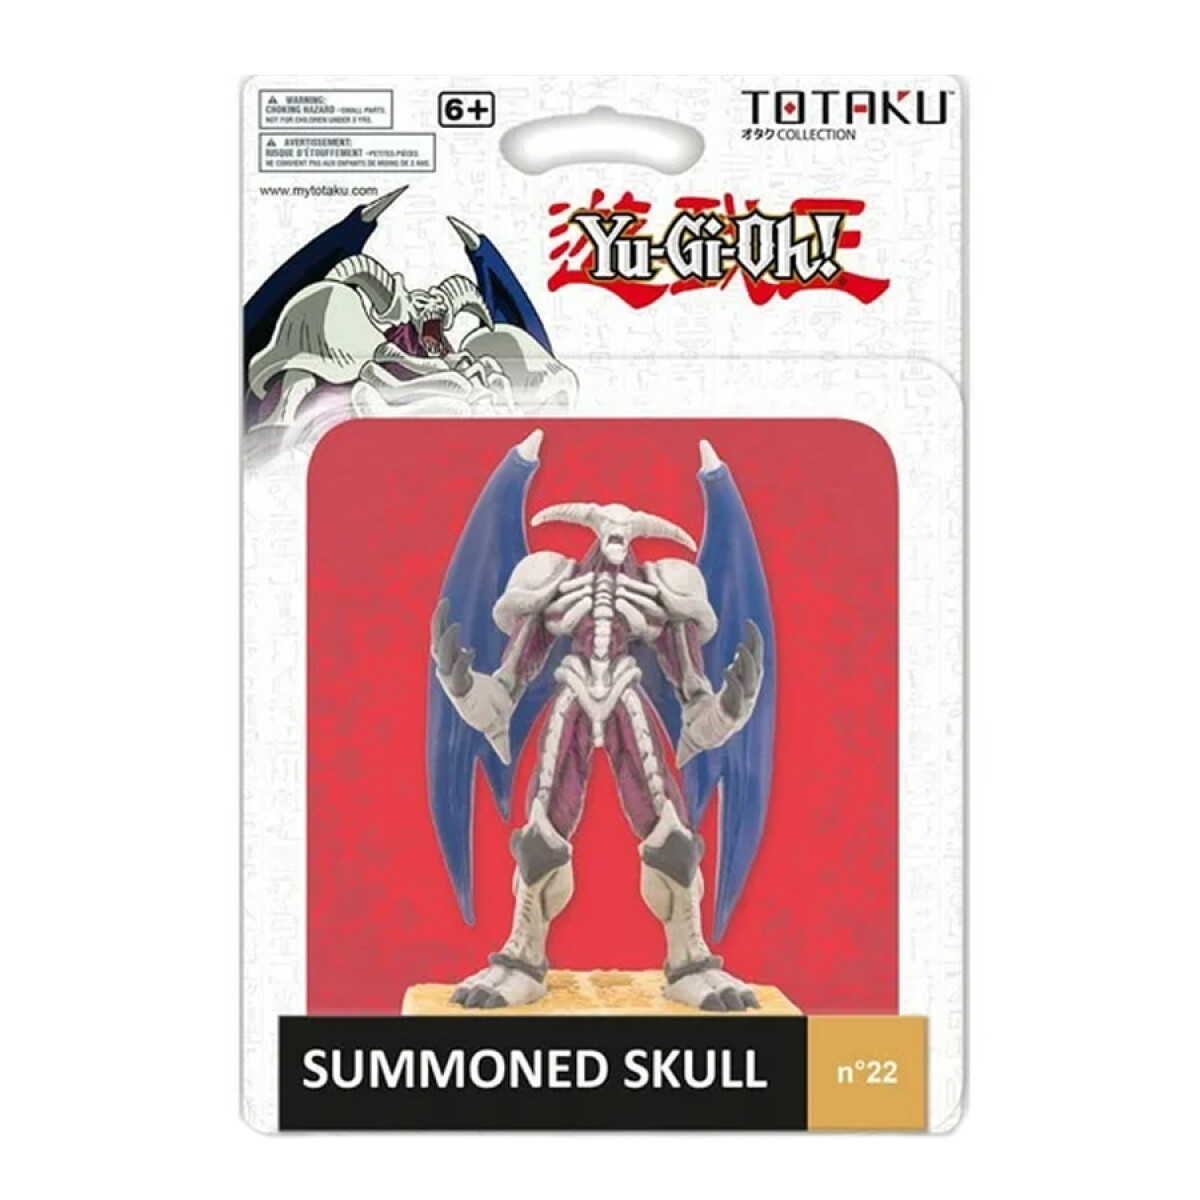 Totaku Collection - Summoned Skull • YuGiOh! 